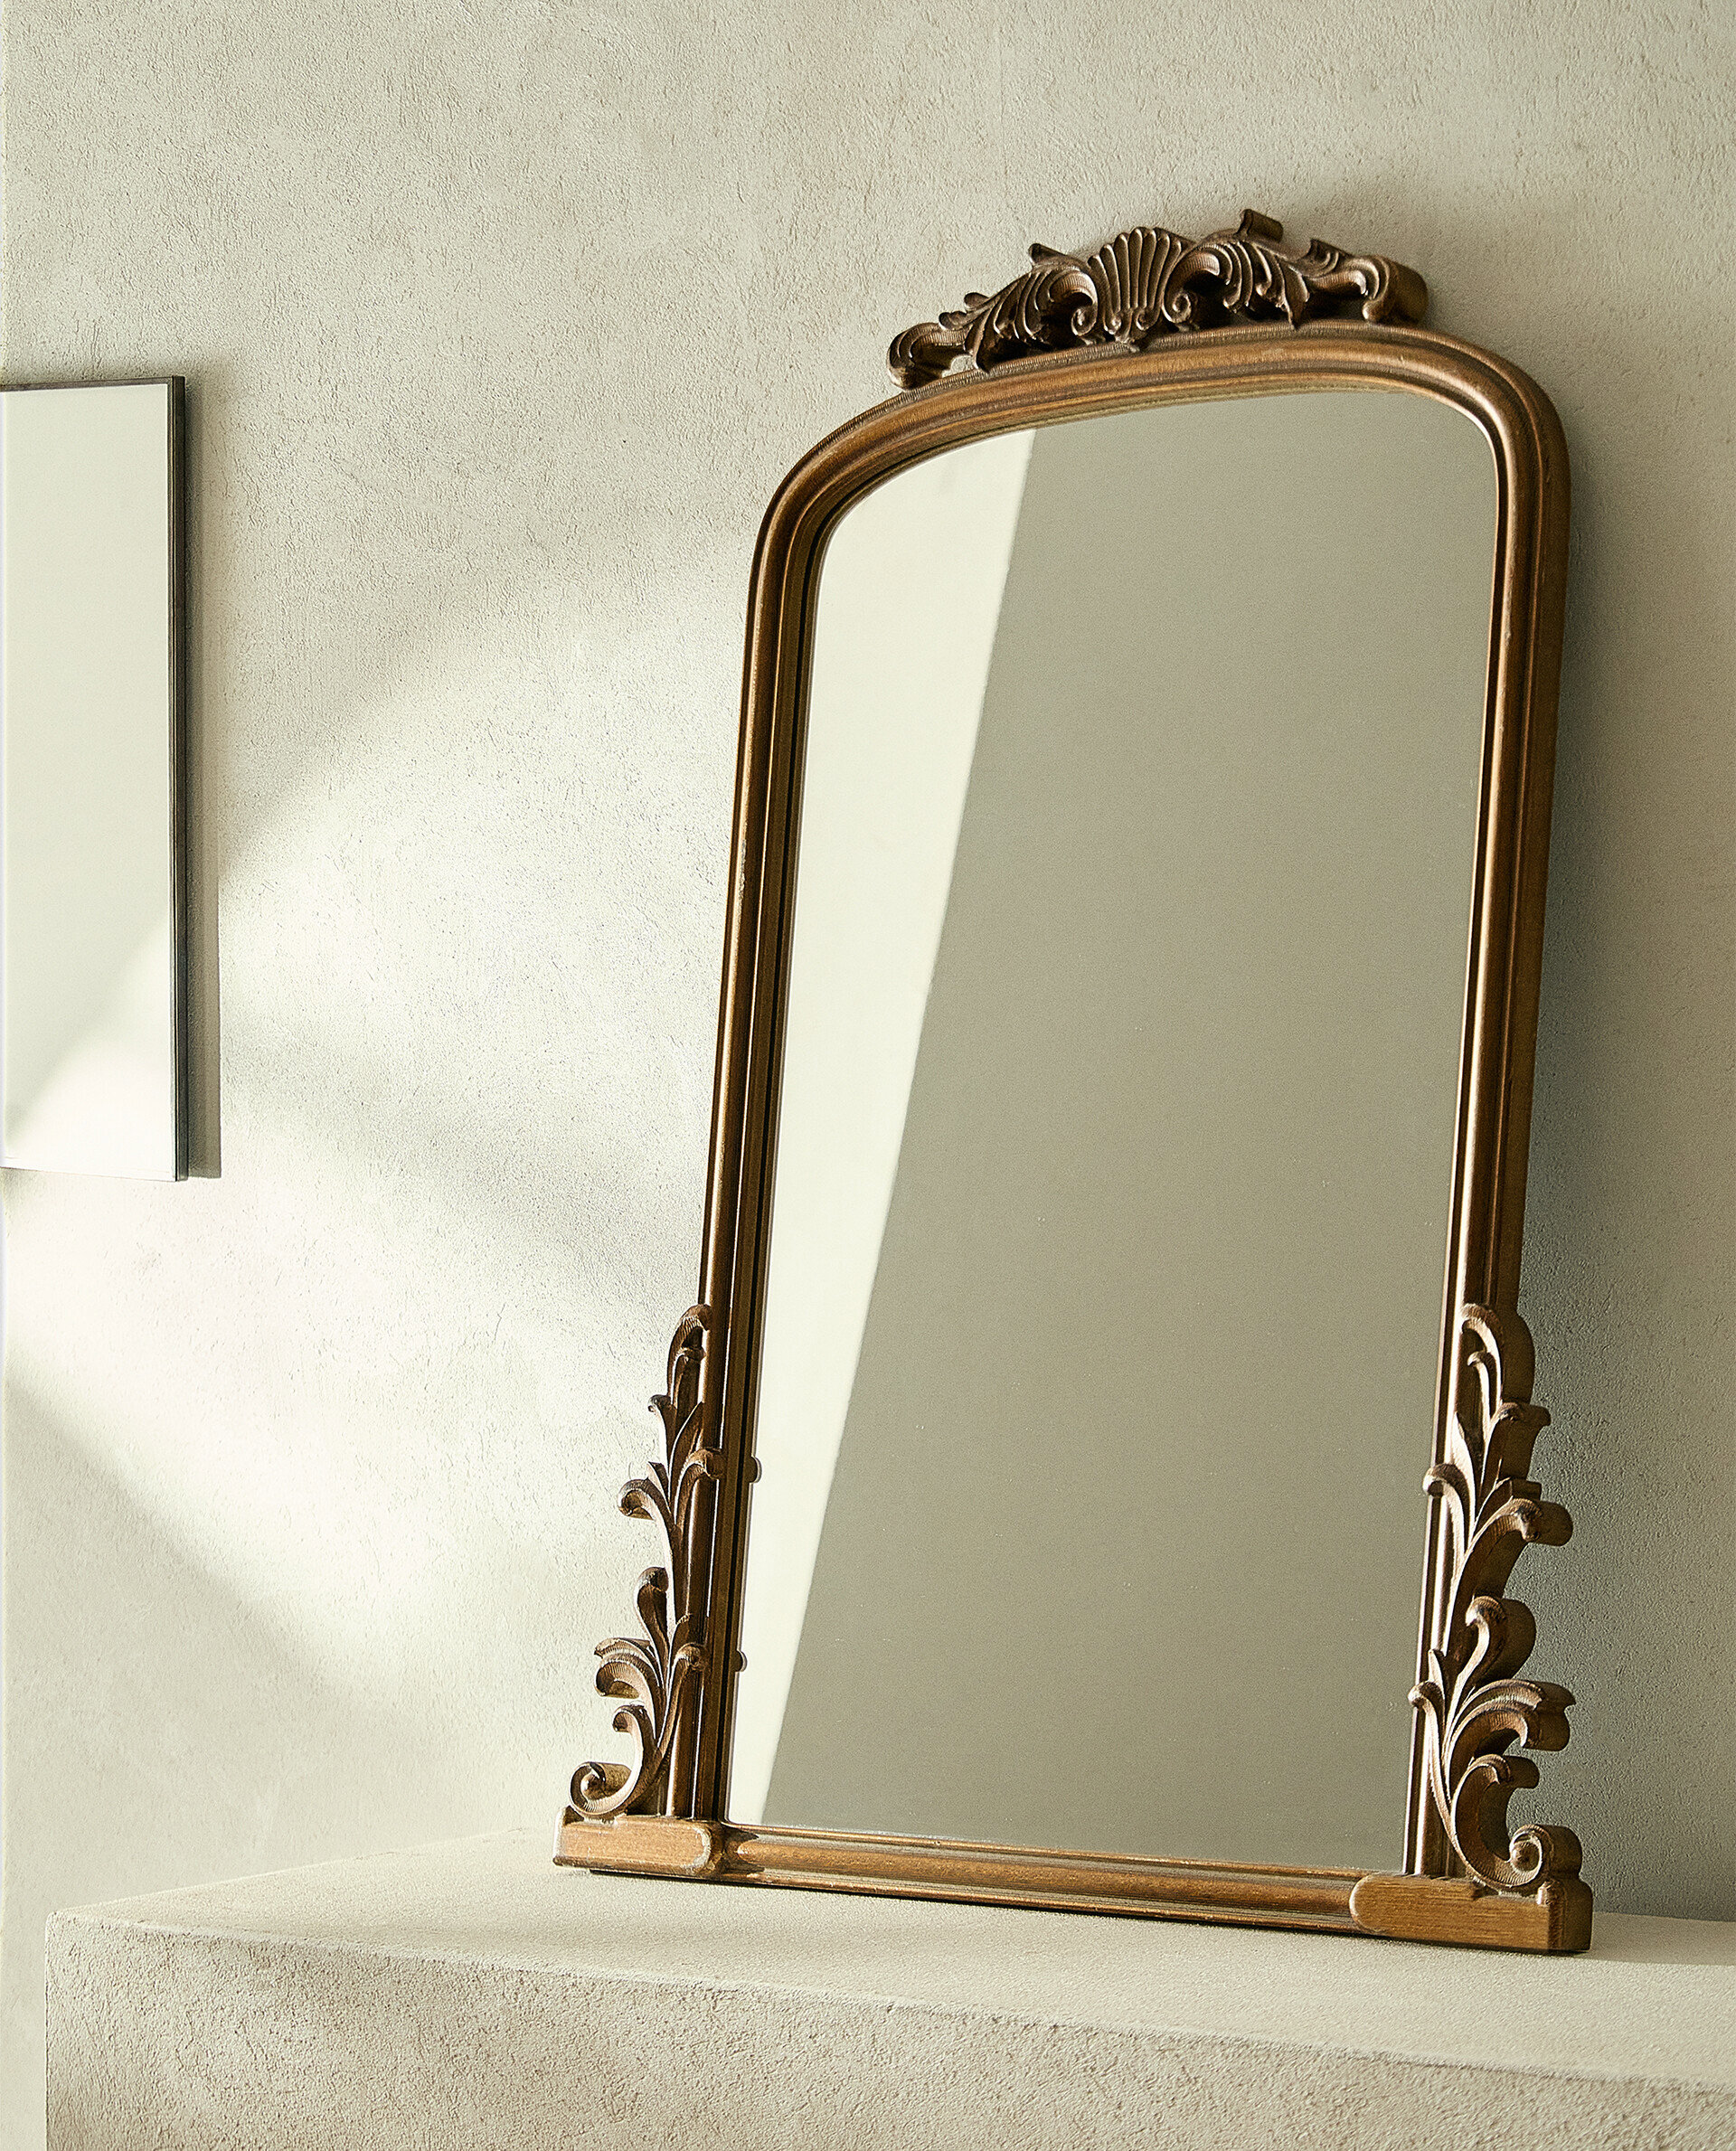 El clásico espejo